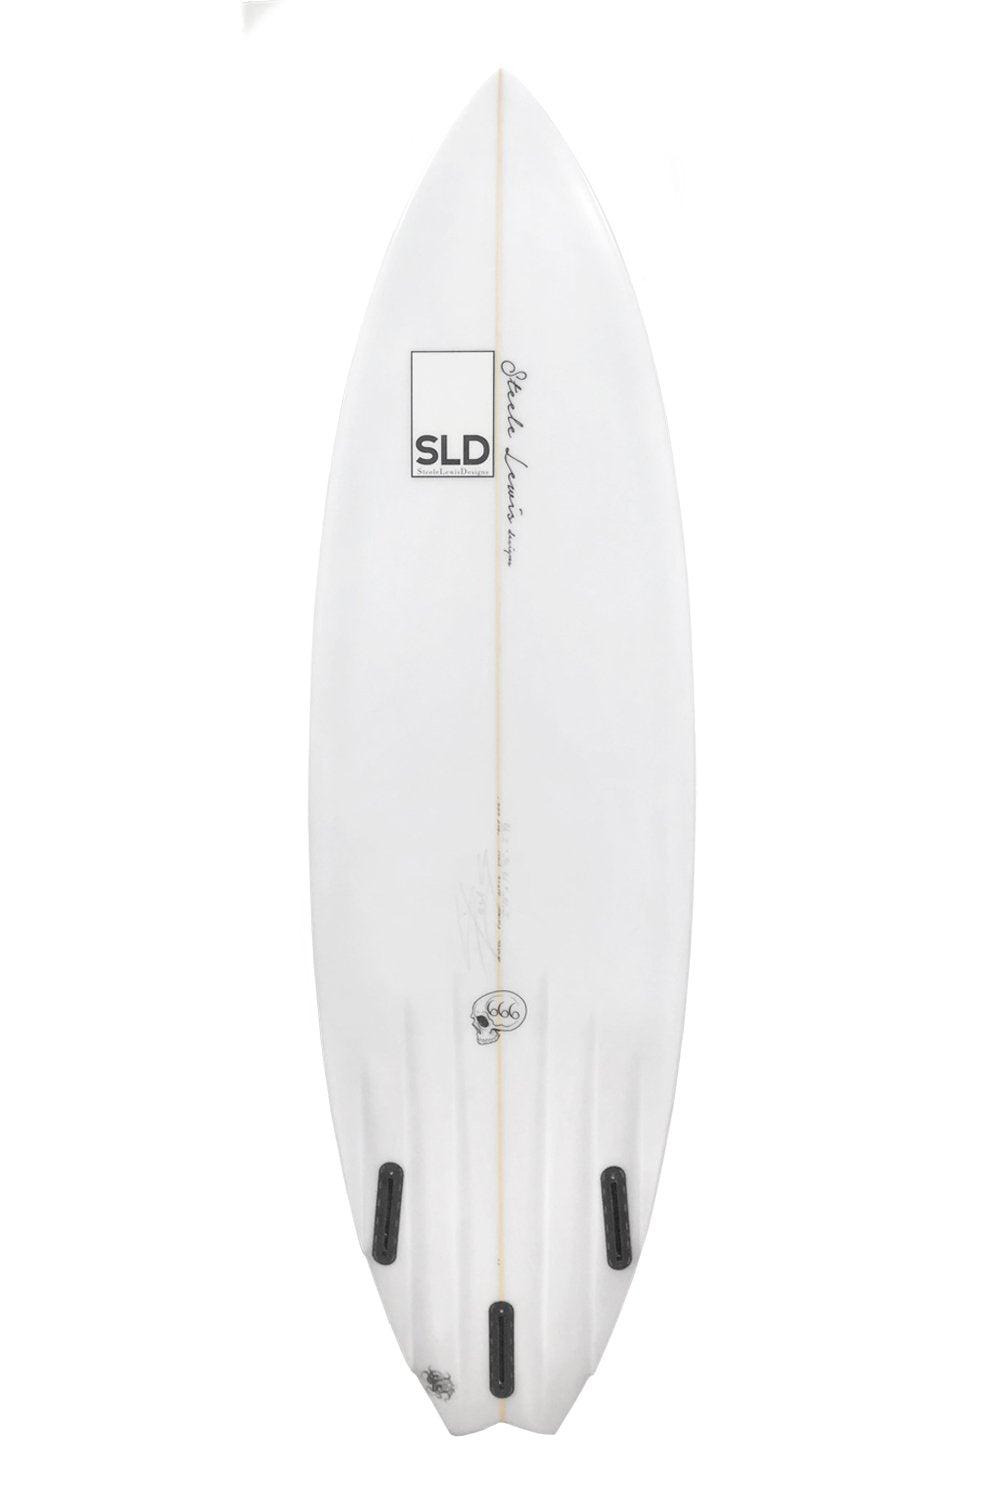 SLD 666 Channel Bottom Surfboard